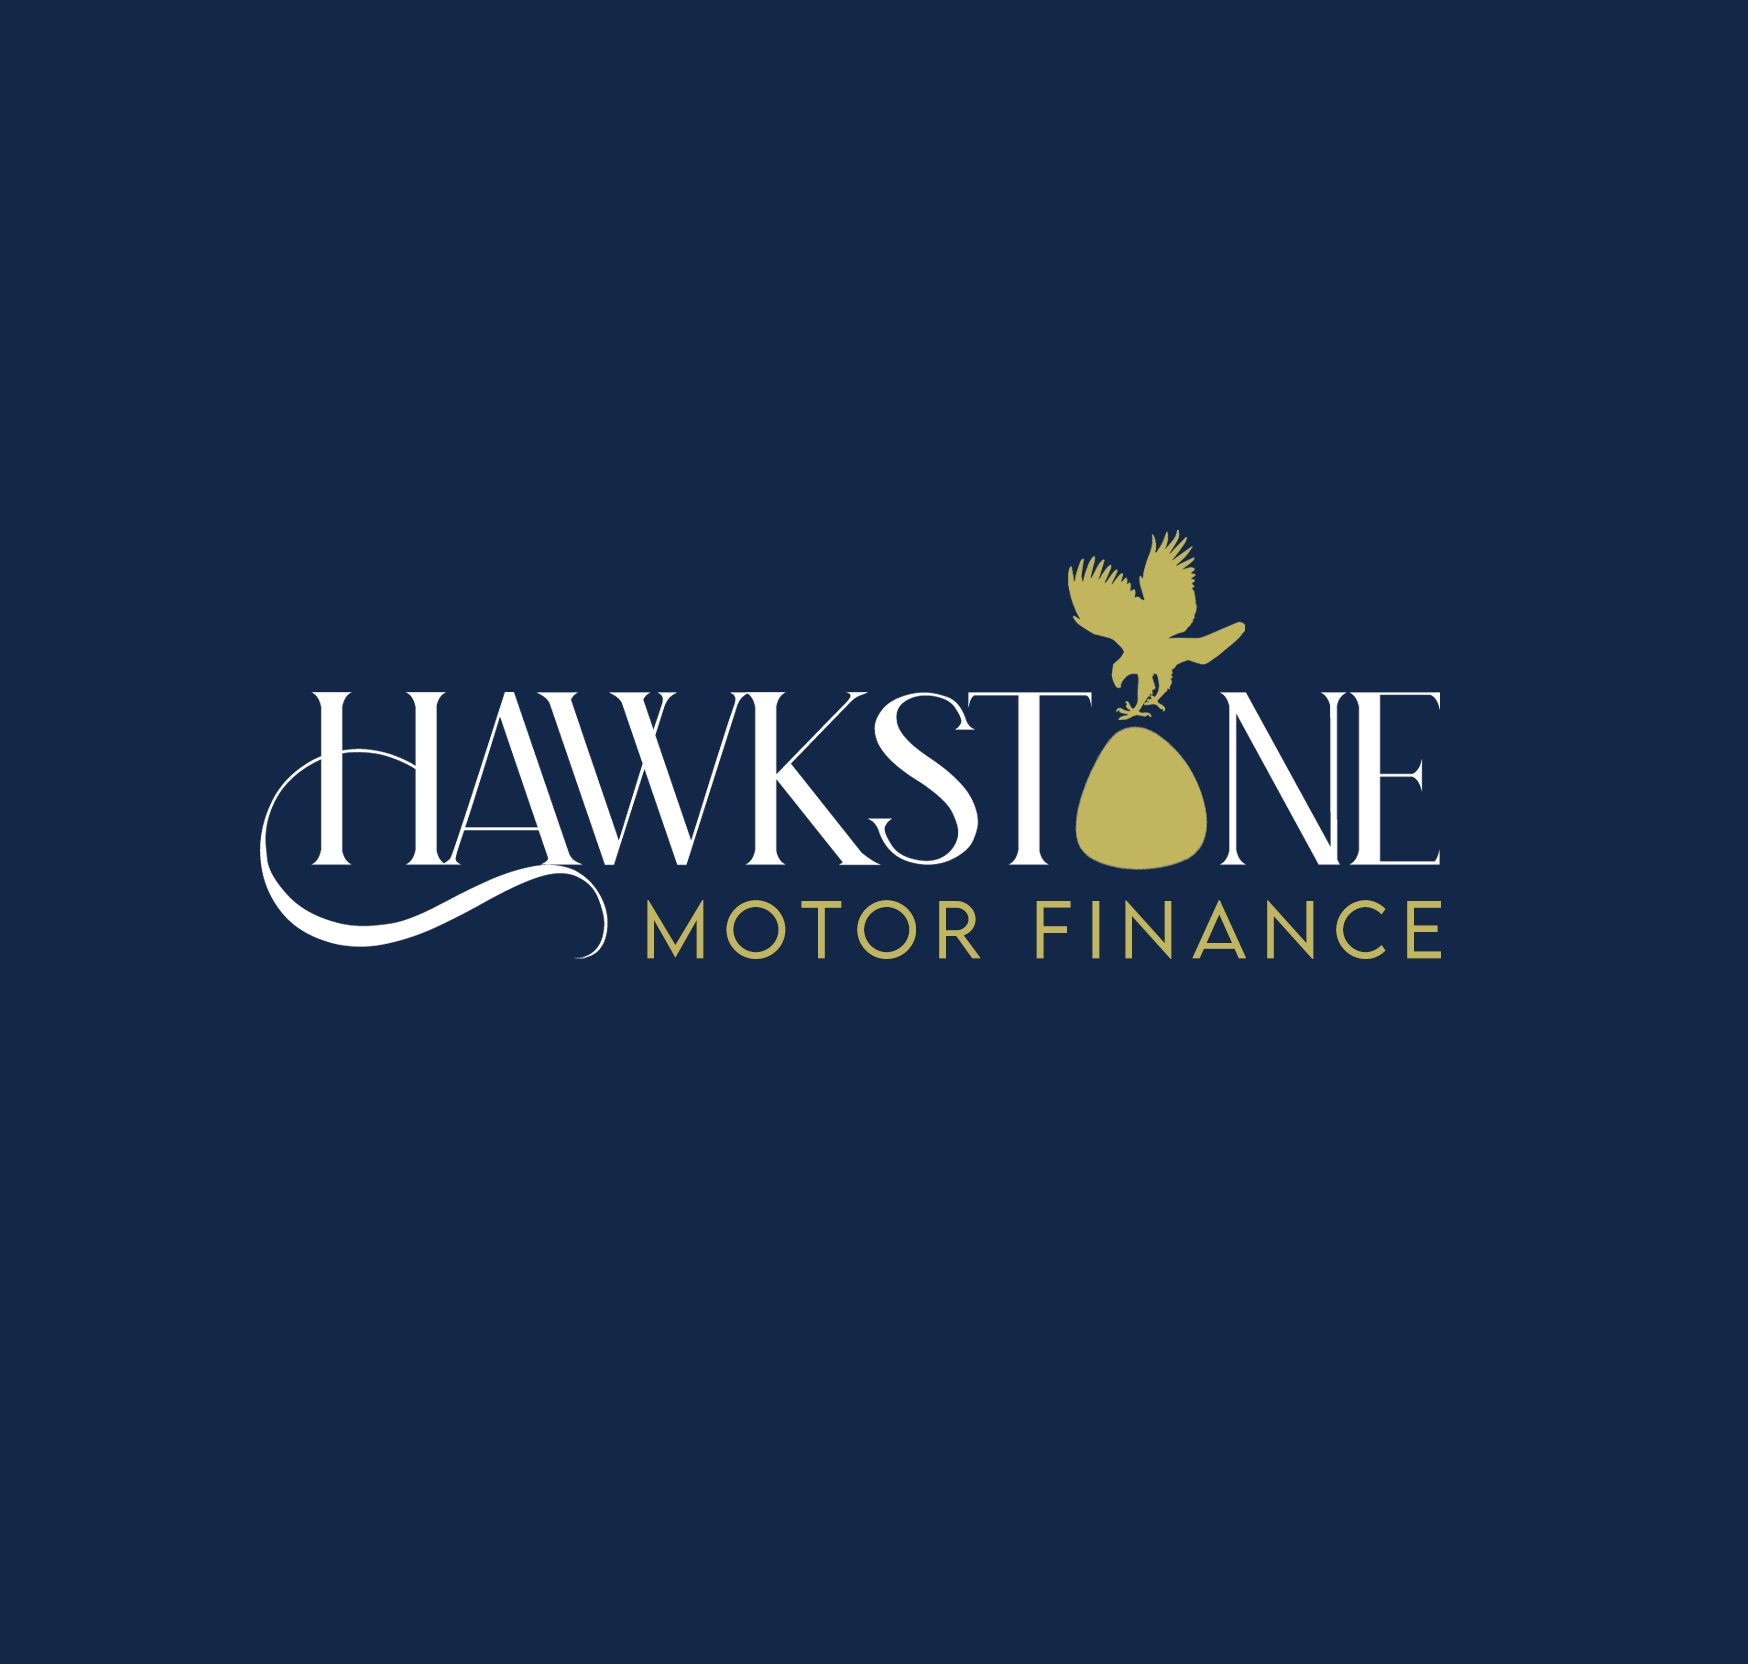 Hawkstone Motor Finance